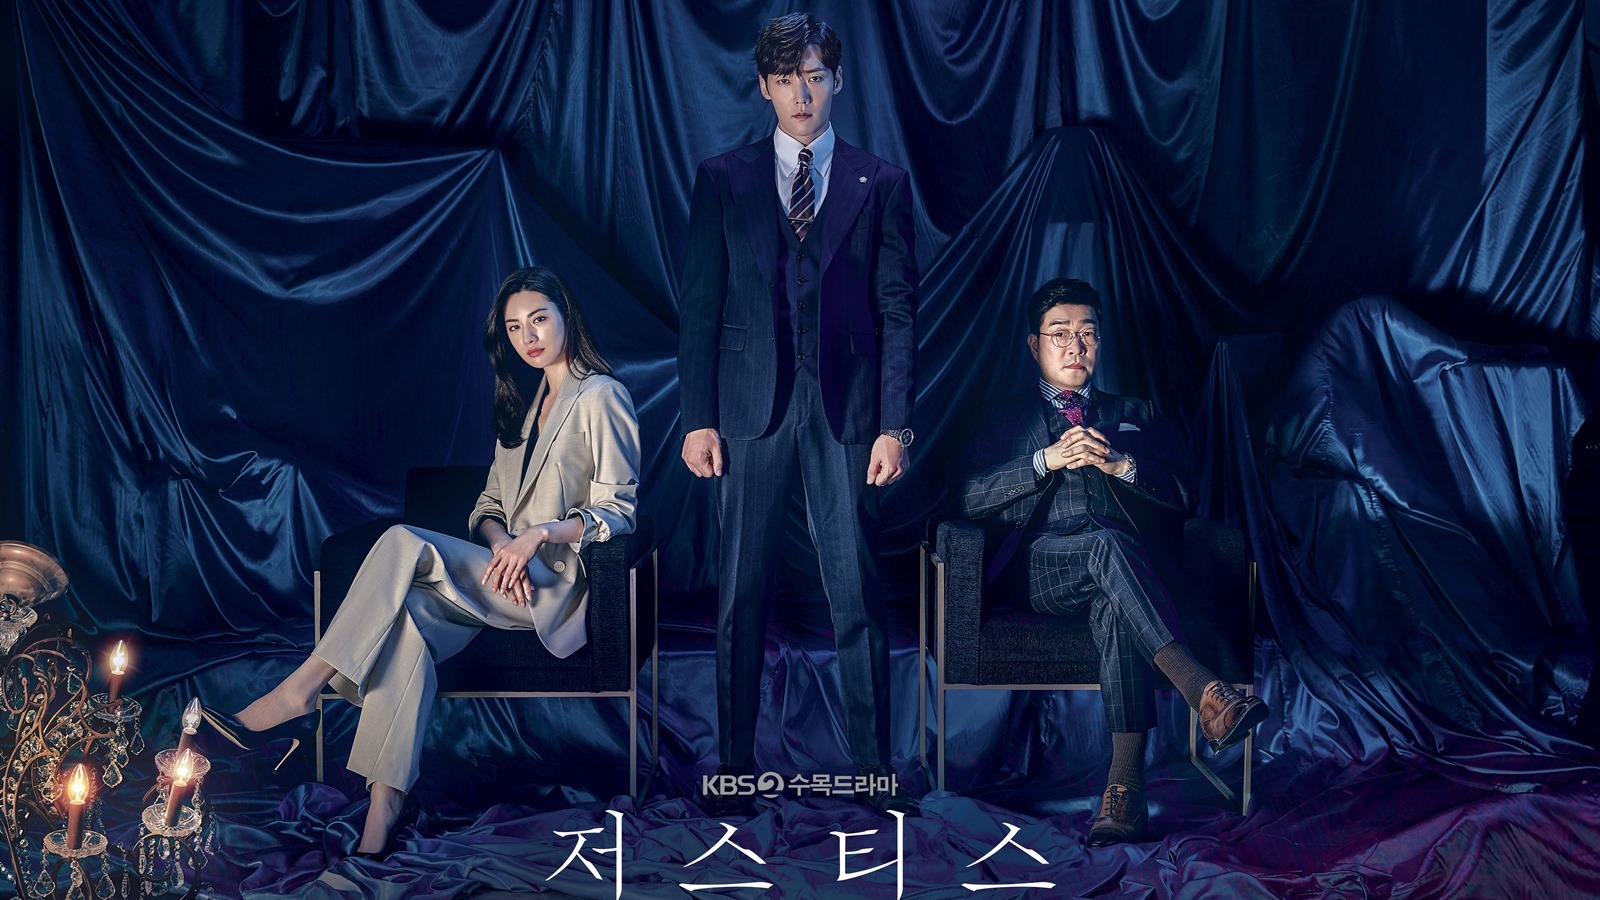 Choi Jin Hyuk phim và chương trình truyền hình: Công lý - Justice (2020)